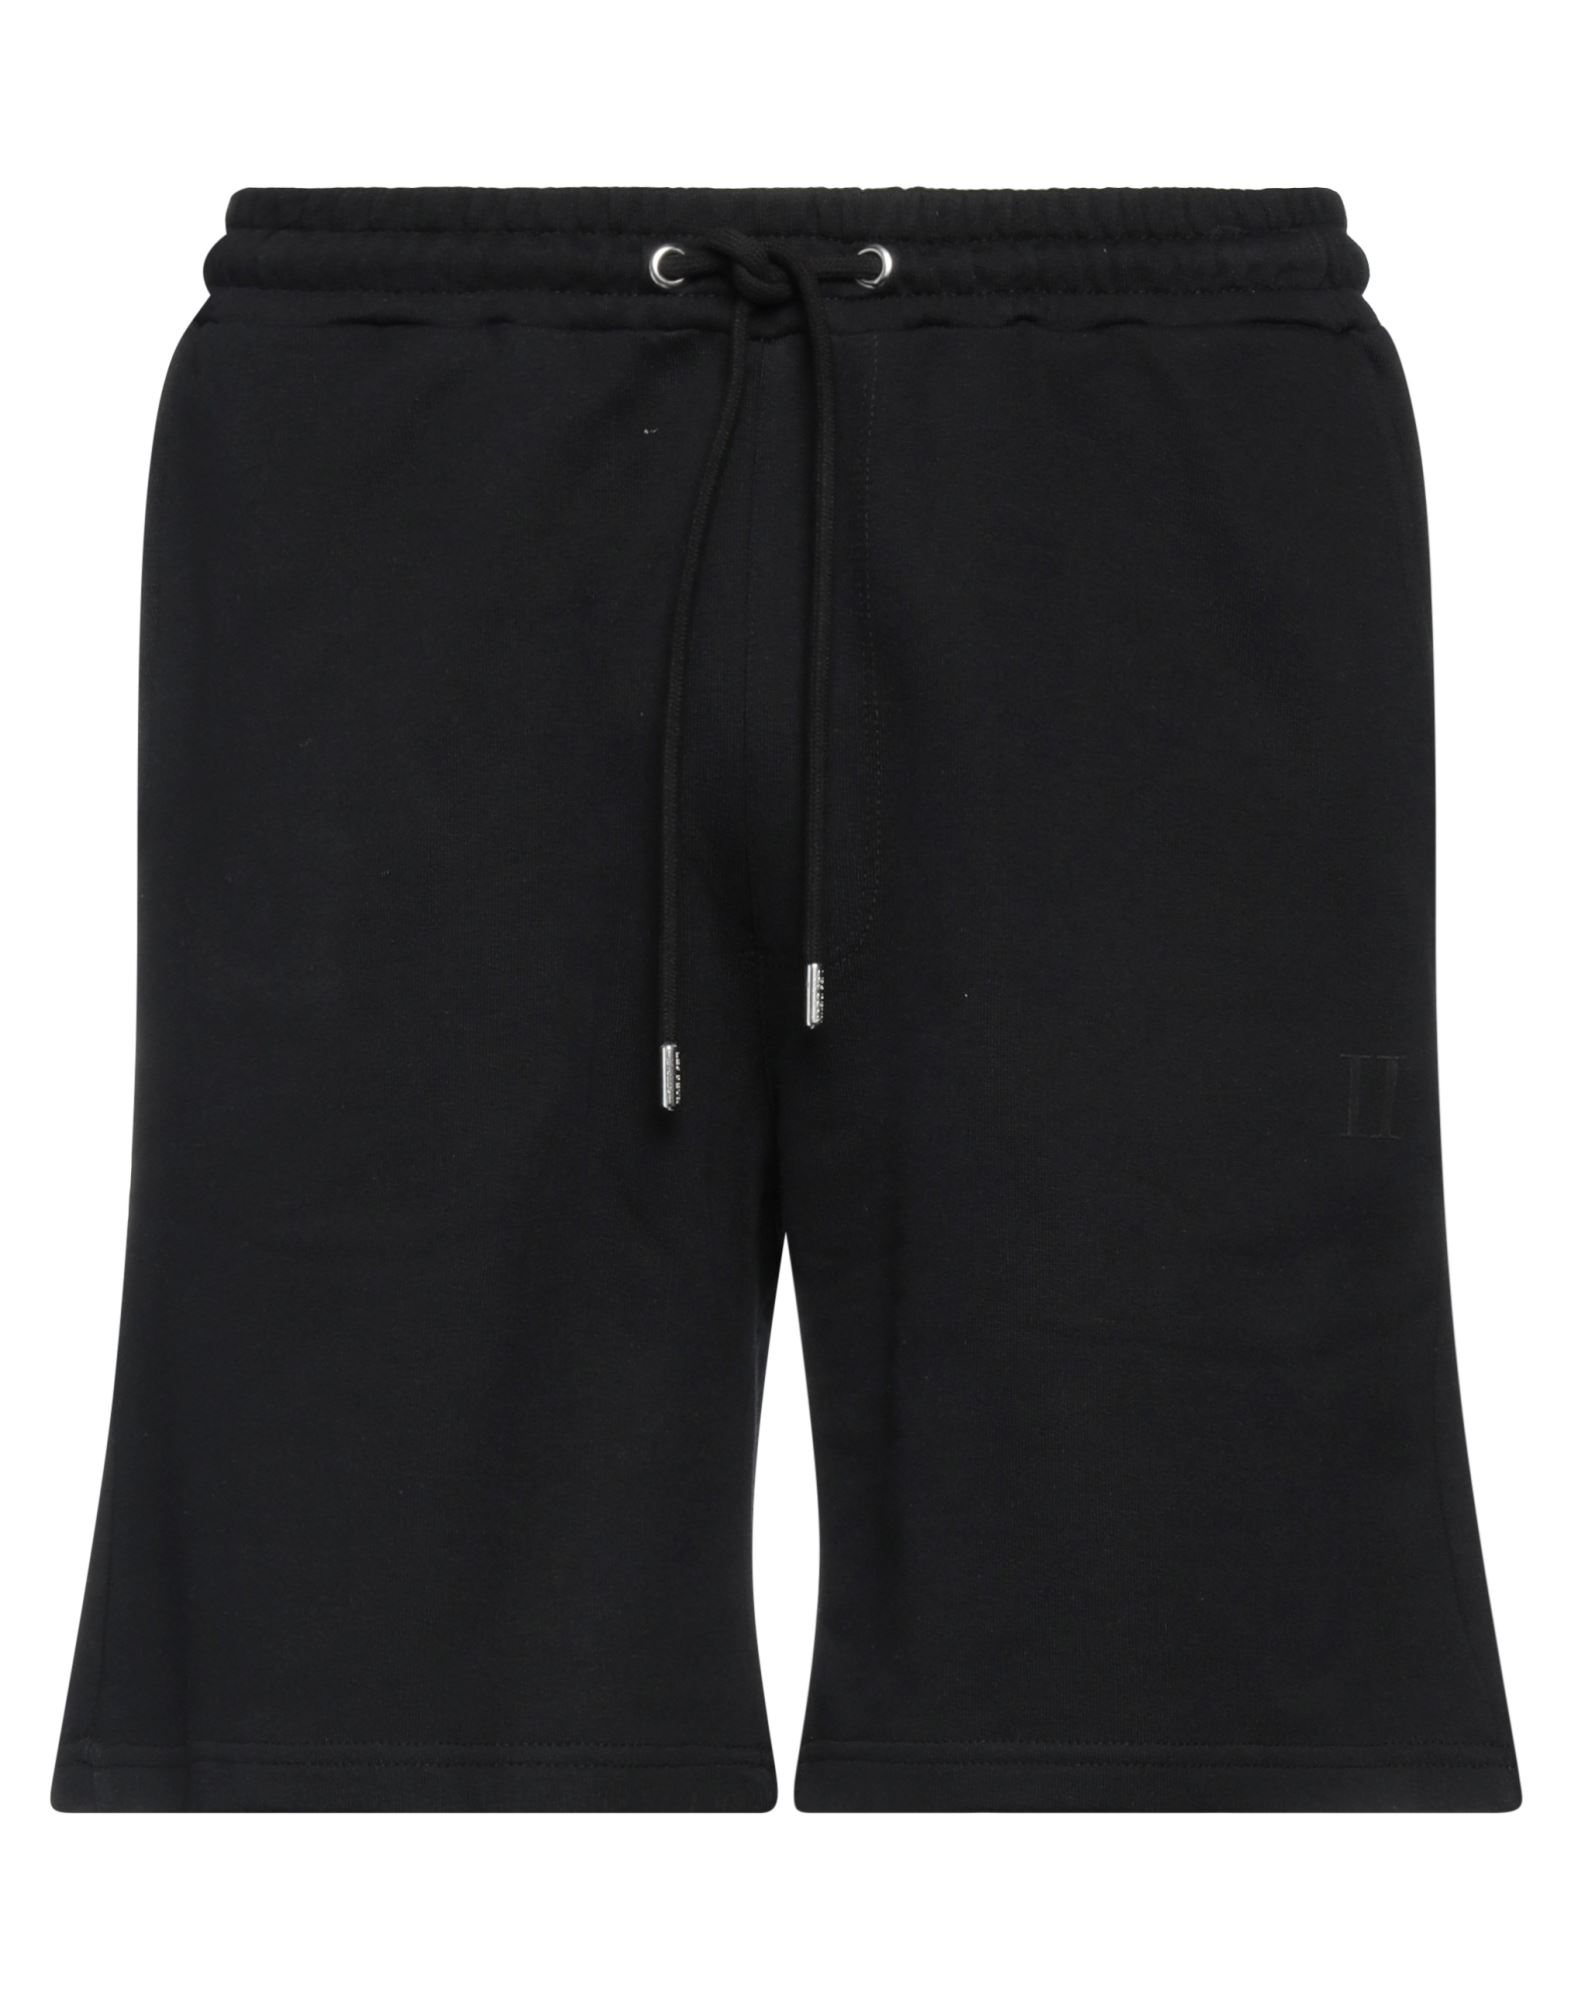 Les Deux Man Shorts & Bermuda Shorts Black Size L Cotton